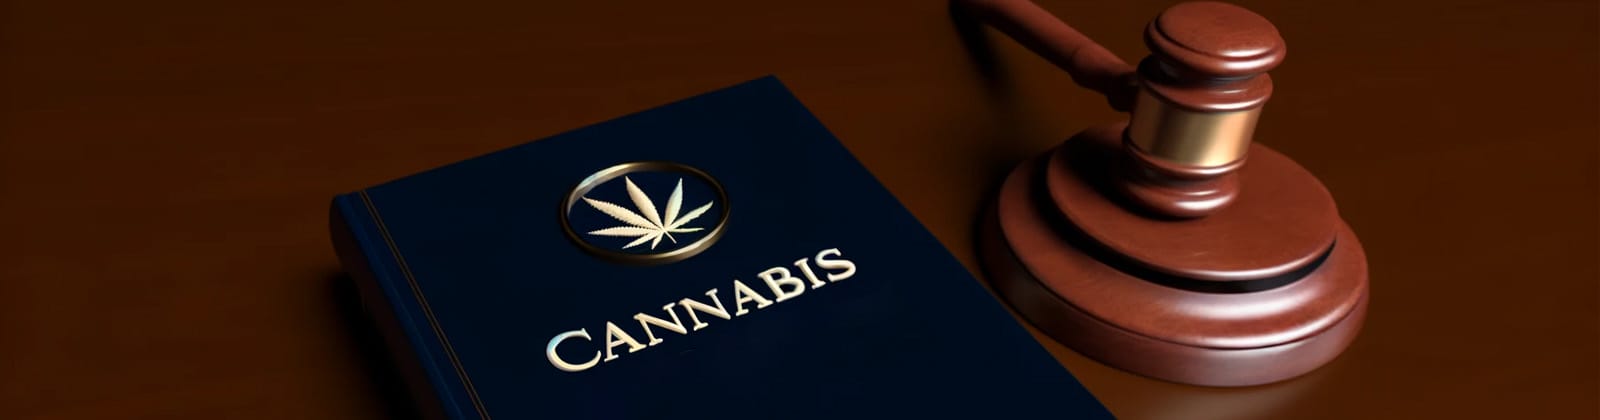 Cannabisgesetz kaufen – hier erfährst du wo und wie du die Gesetzestexte bekommst oder wo du es lesen kannst